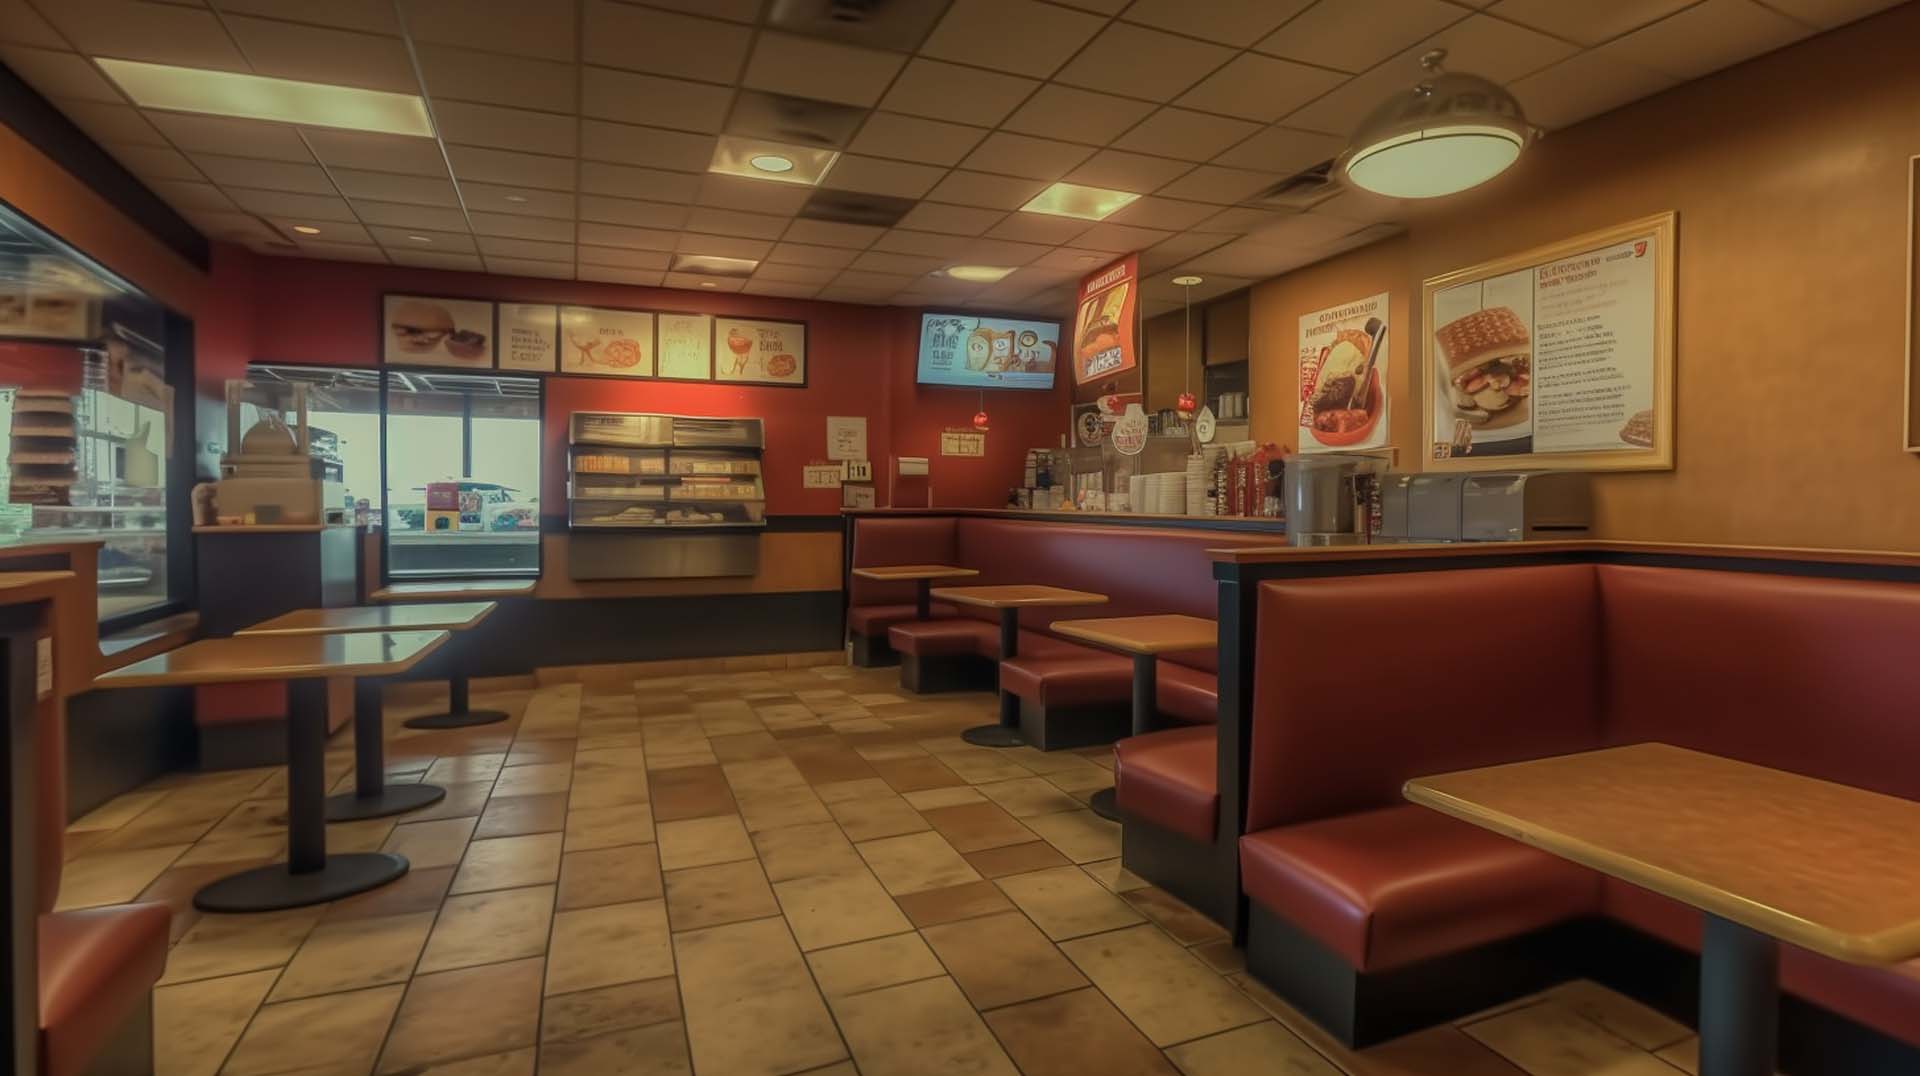 Popular Fast Food Restaurants in Greenville